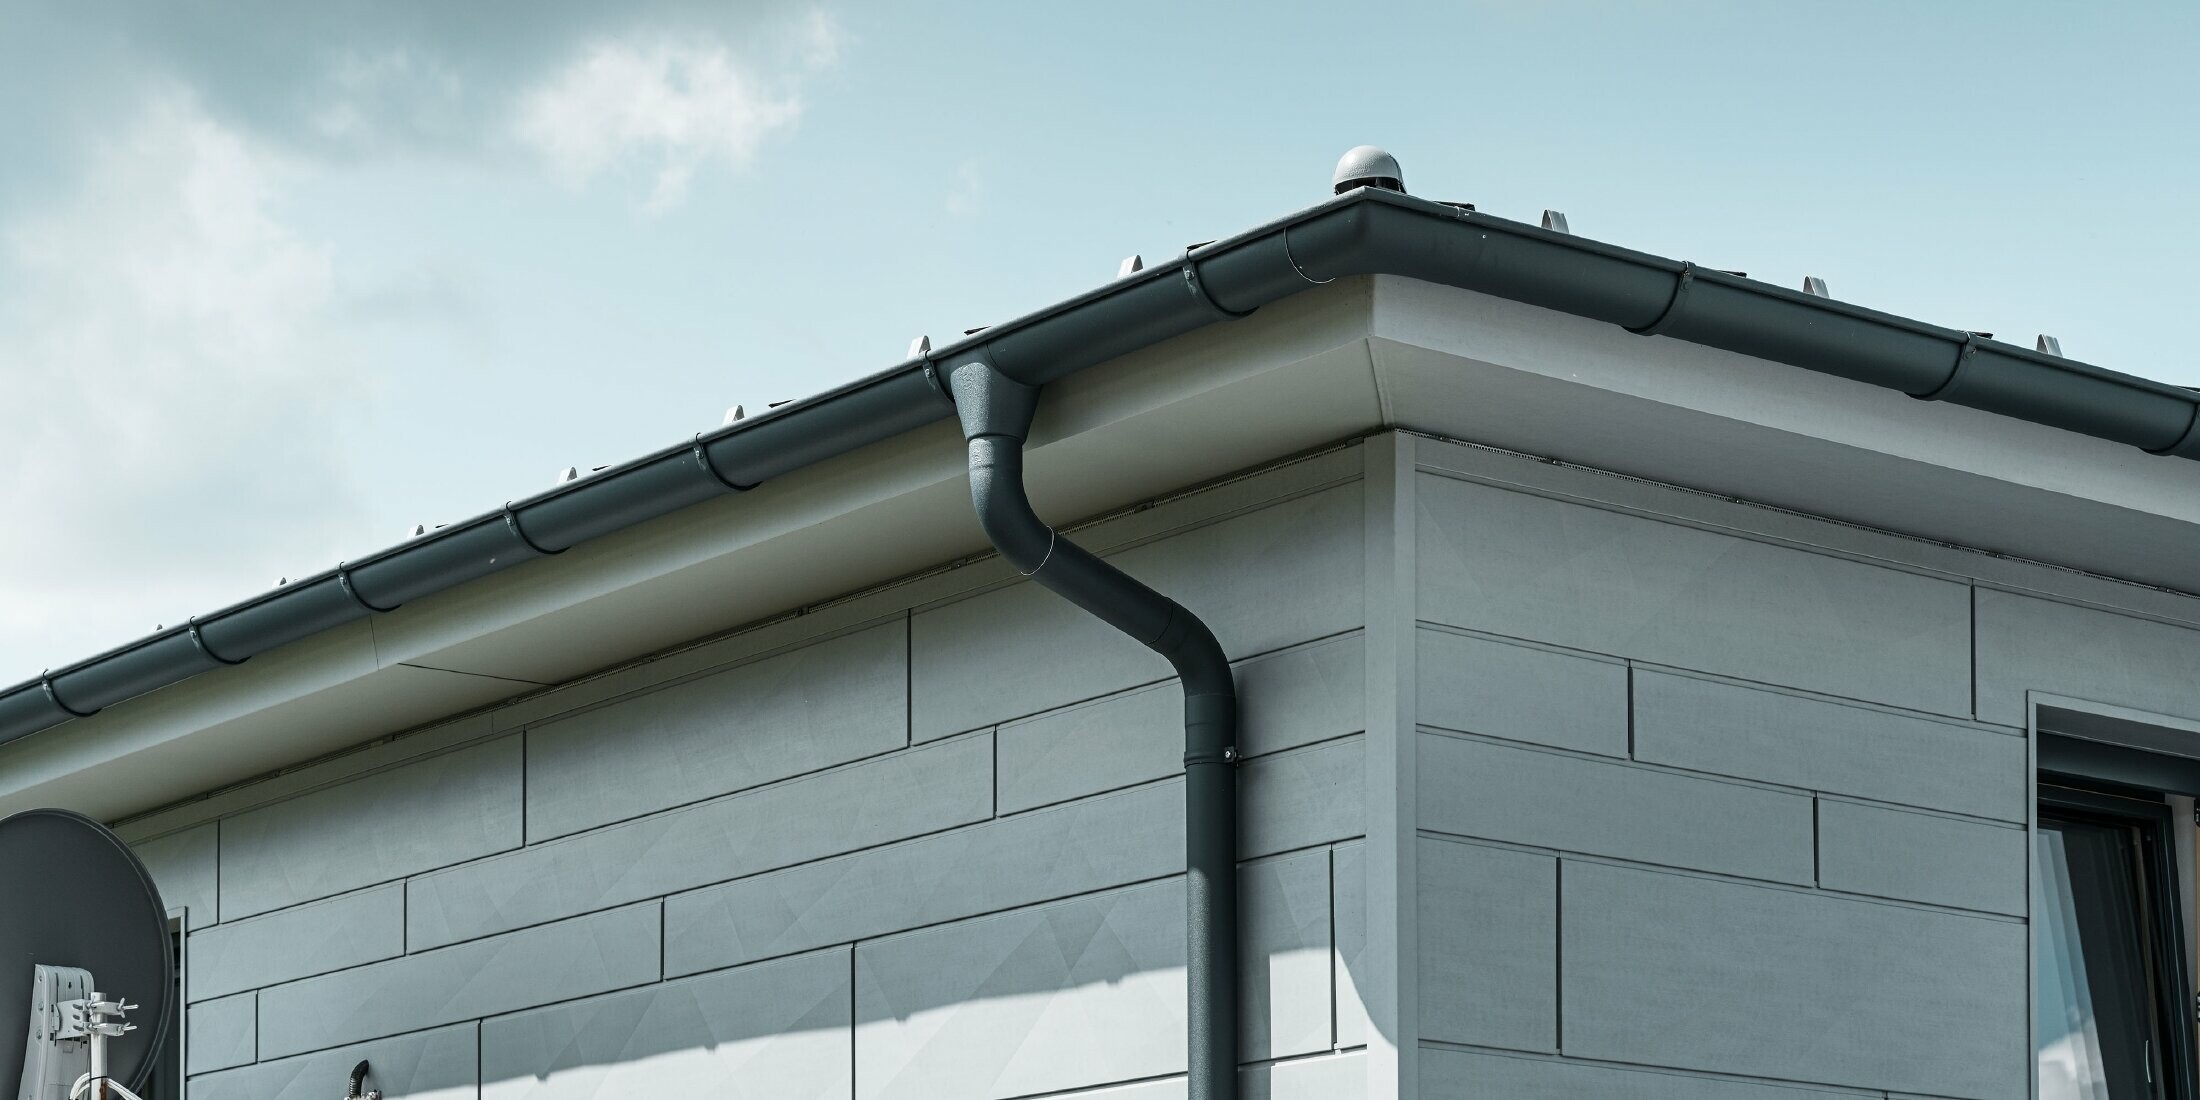 Soffitto con grondaia PREFA, bocchetta e tubo pluviale antracite con facciata in Doga.X PREFA grigio patina